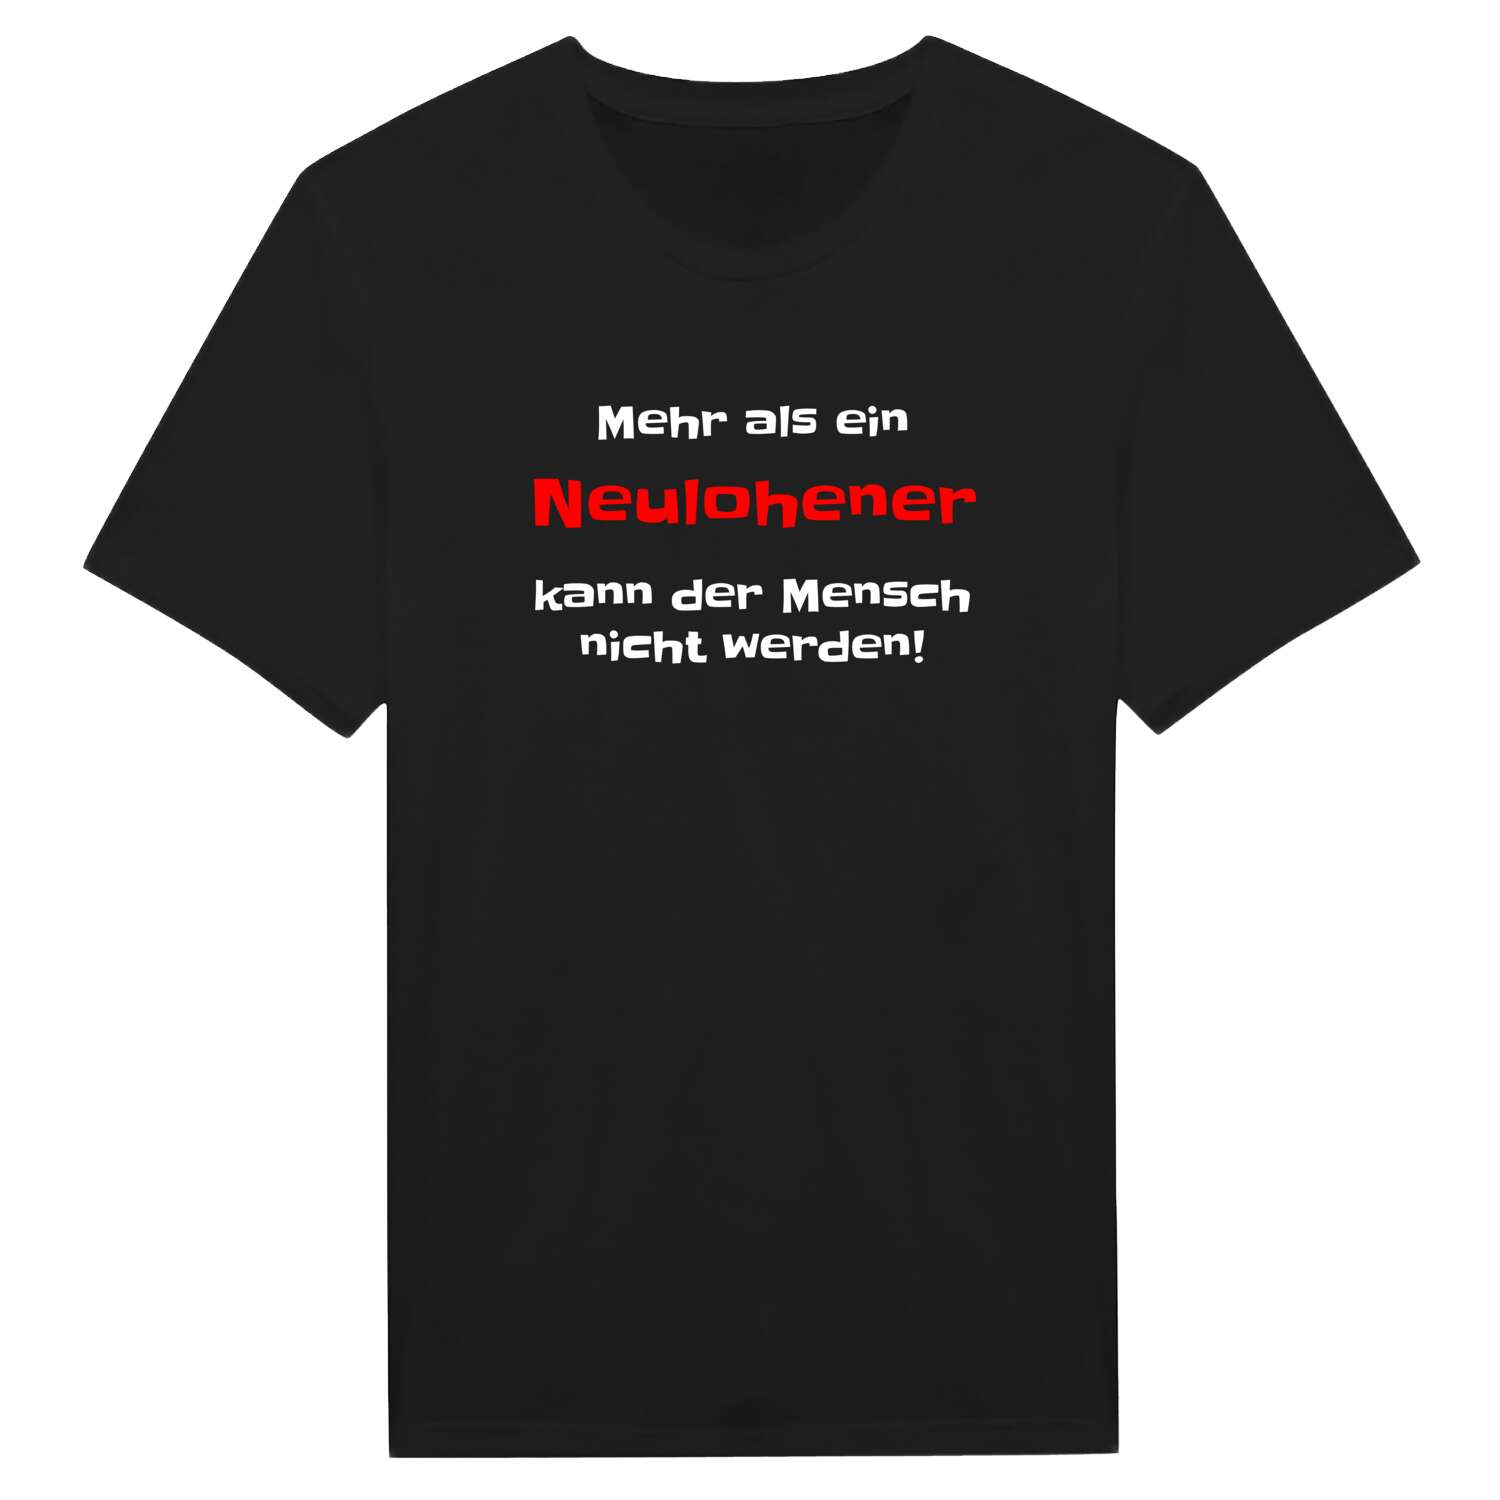 Neulohe T-Shirt »Mehr als ein«